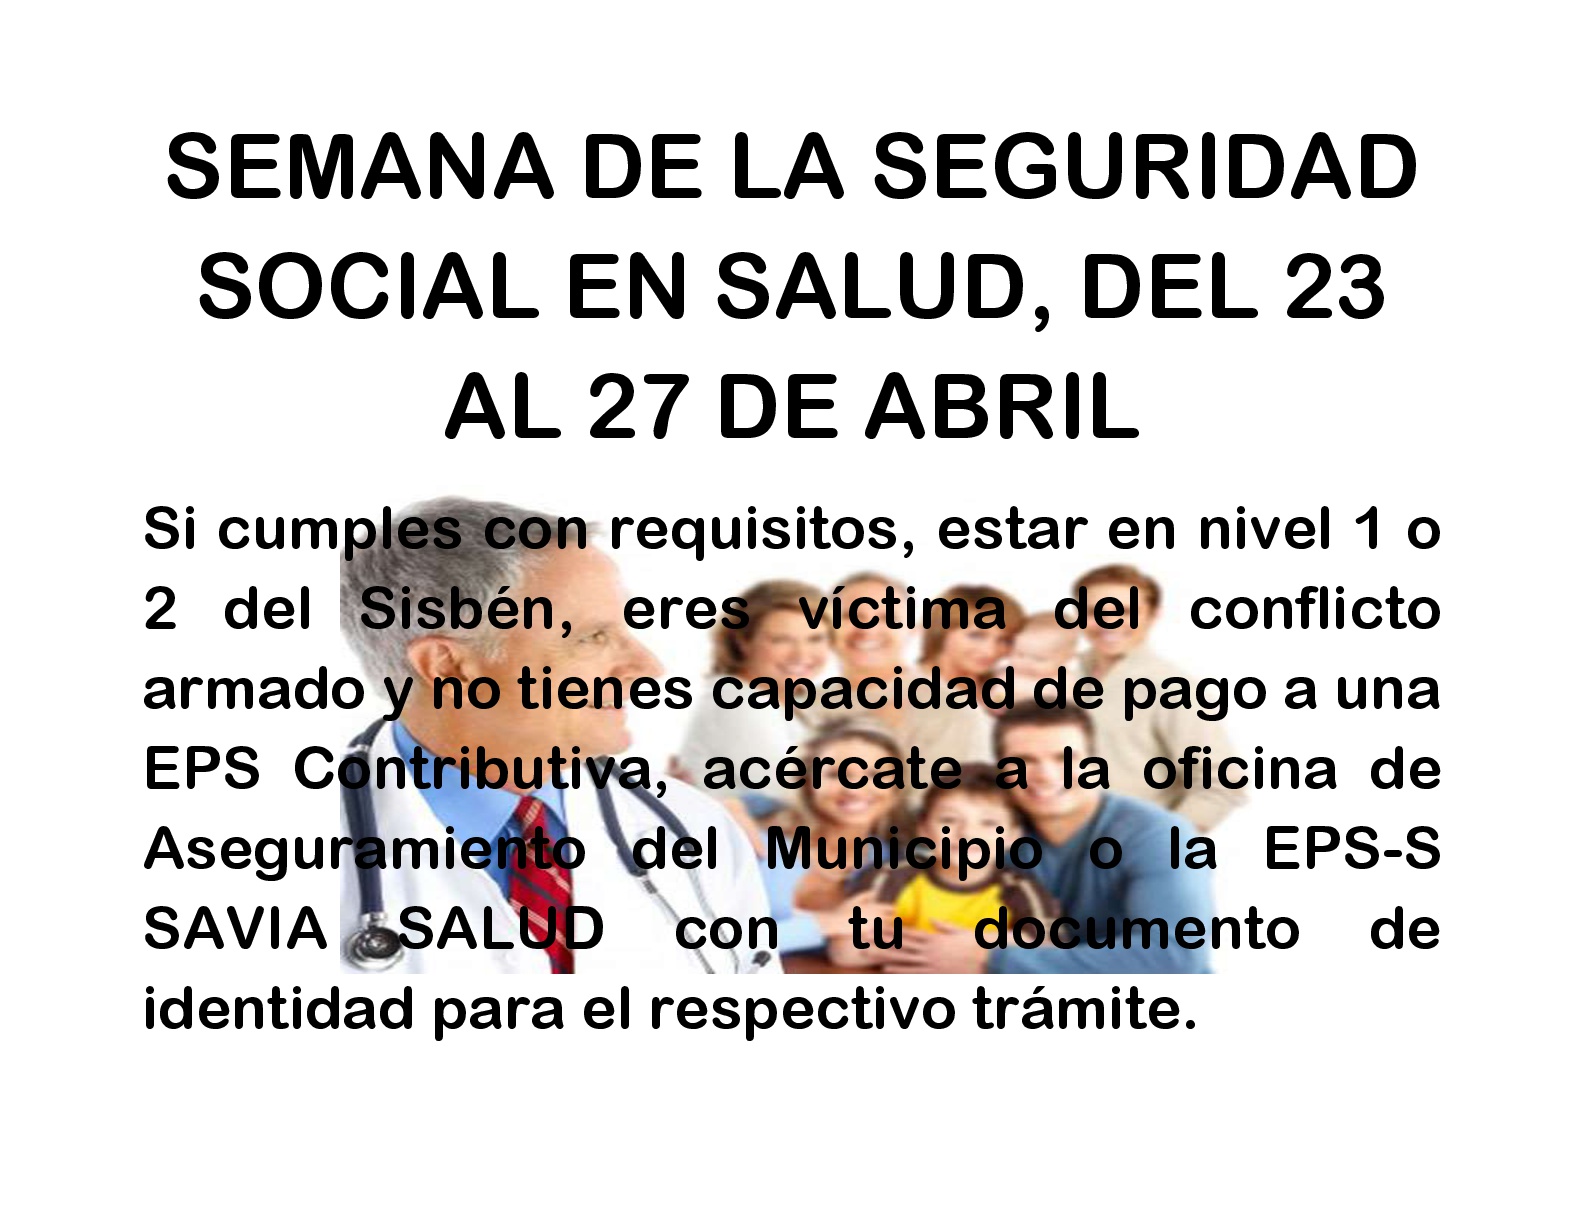 Semana De La Seguridad Social En Salud, Del 23 Al 27 De Abril